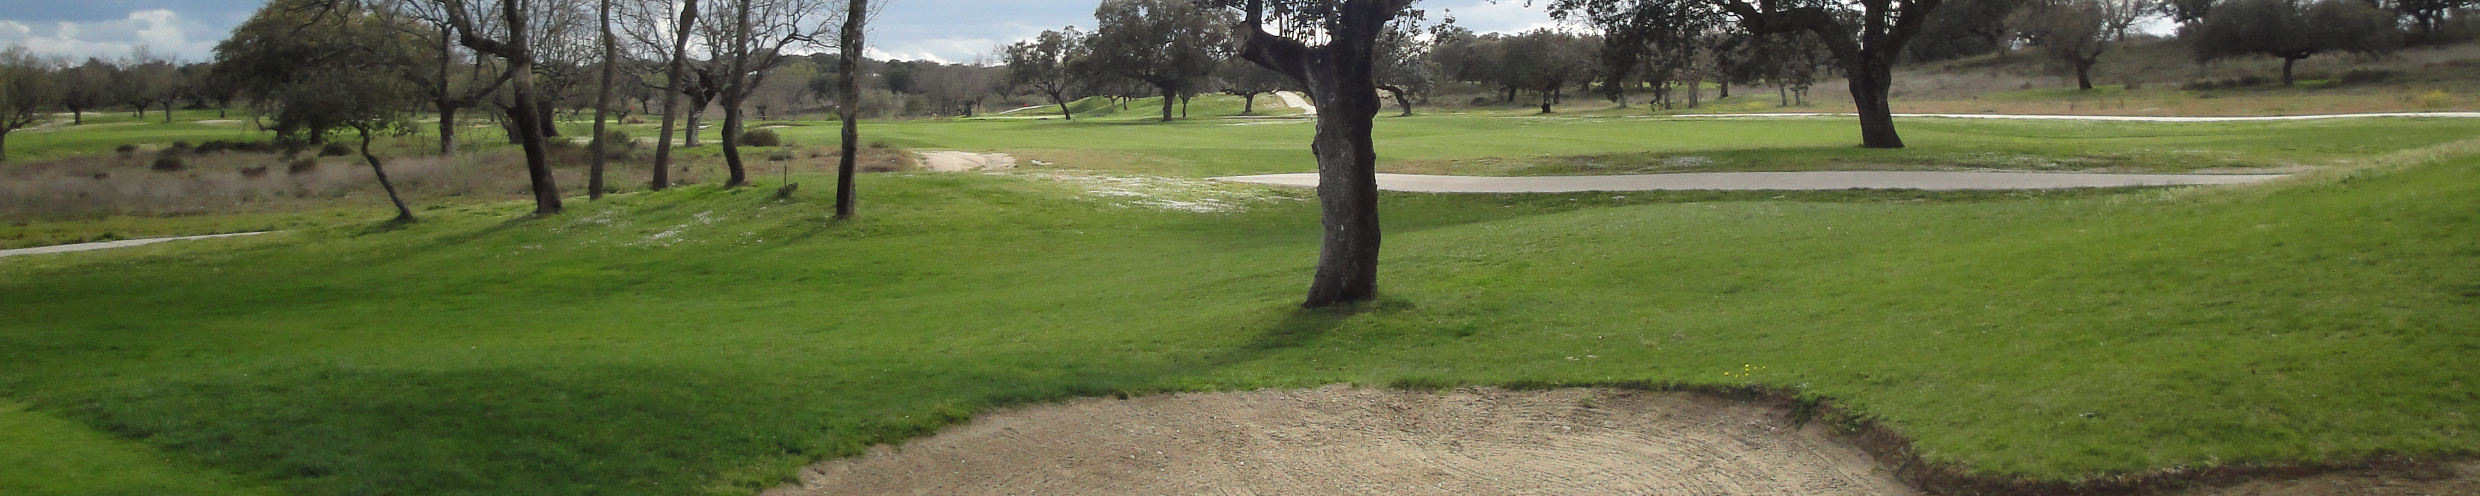 Pedro Linhart hoyo 1 Talayuela golf